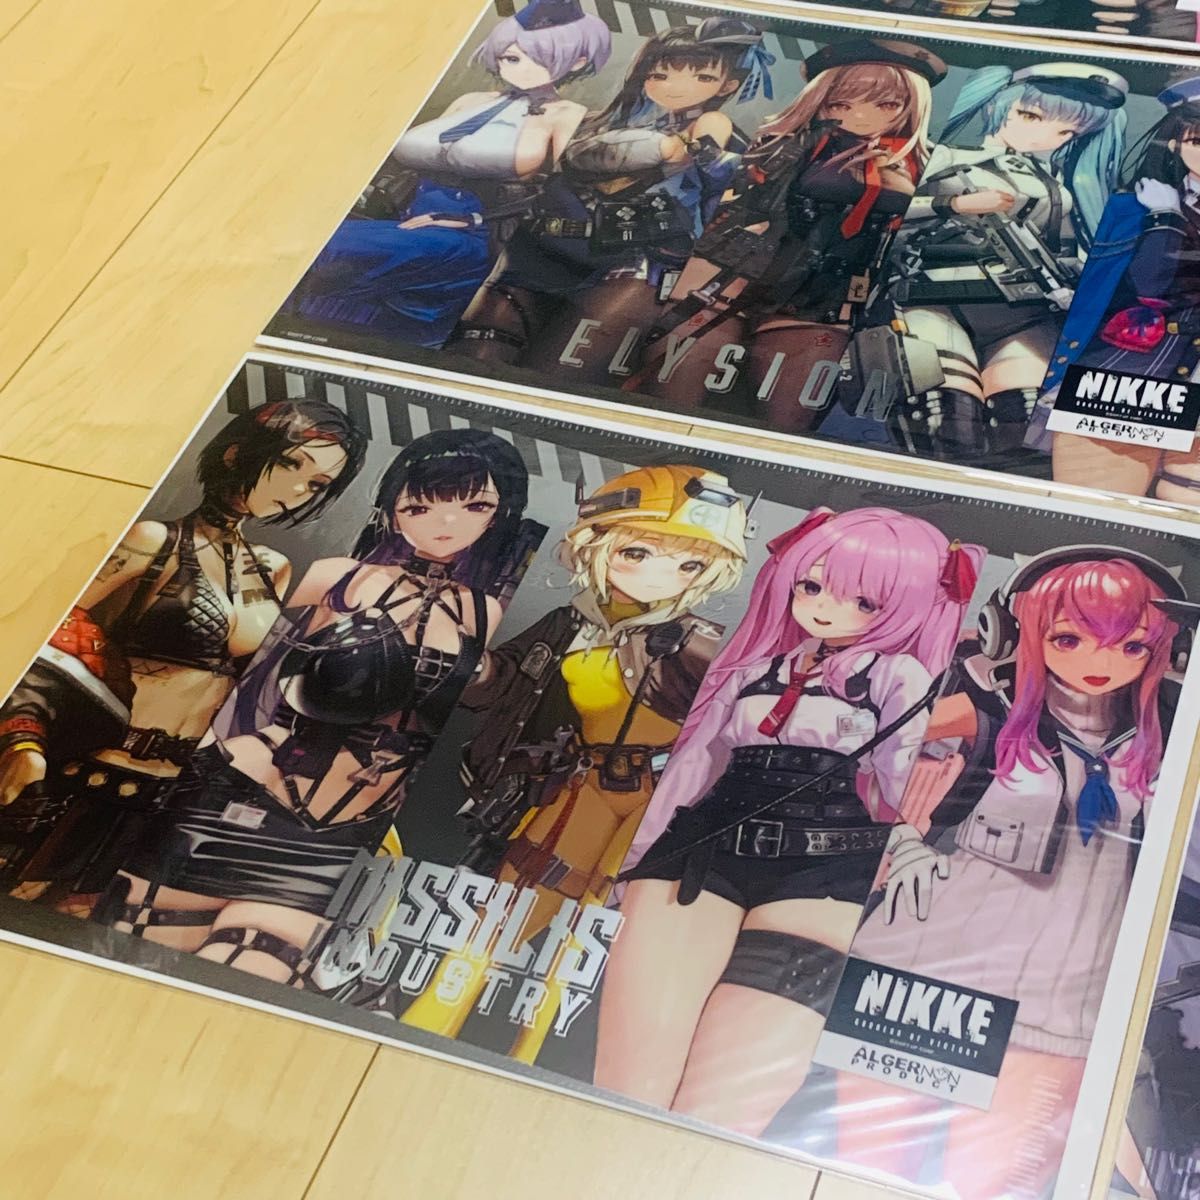 勝利の女神 NIKKE メガニケ A3 メタルポスター ポスター フルコンプ